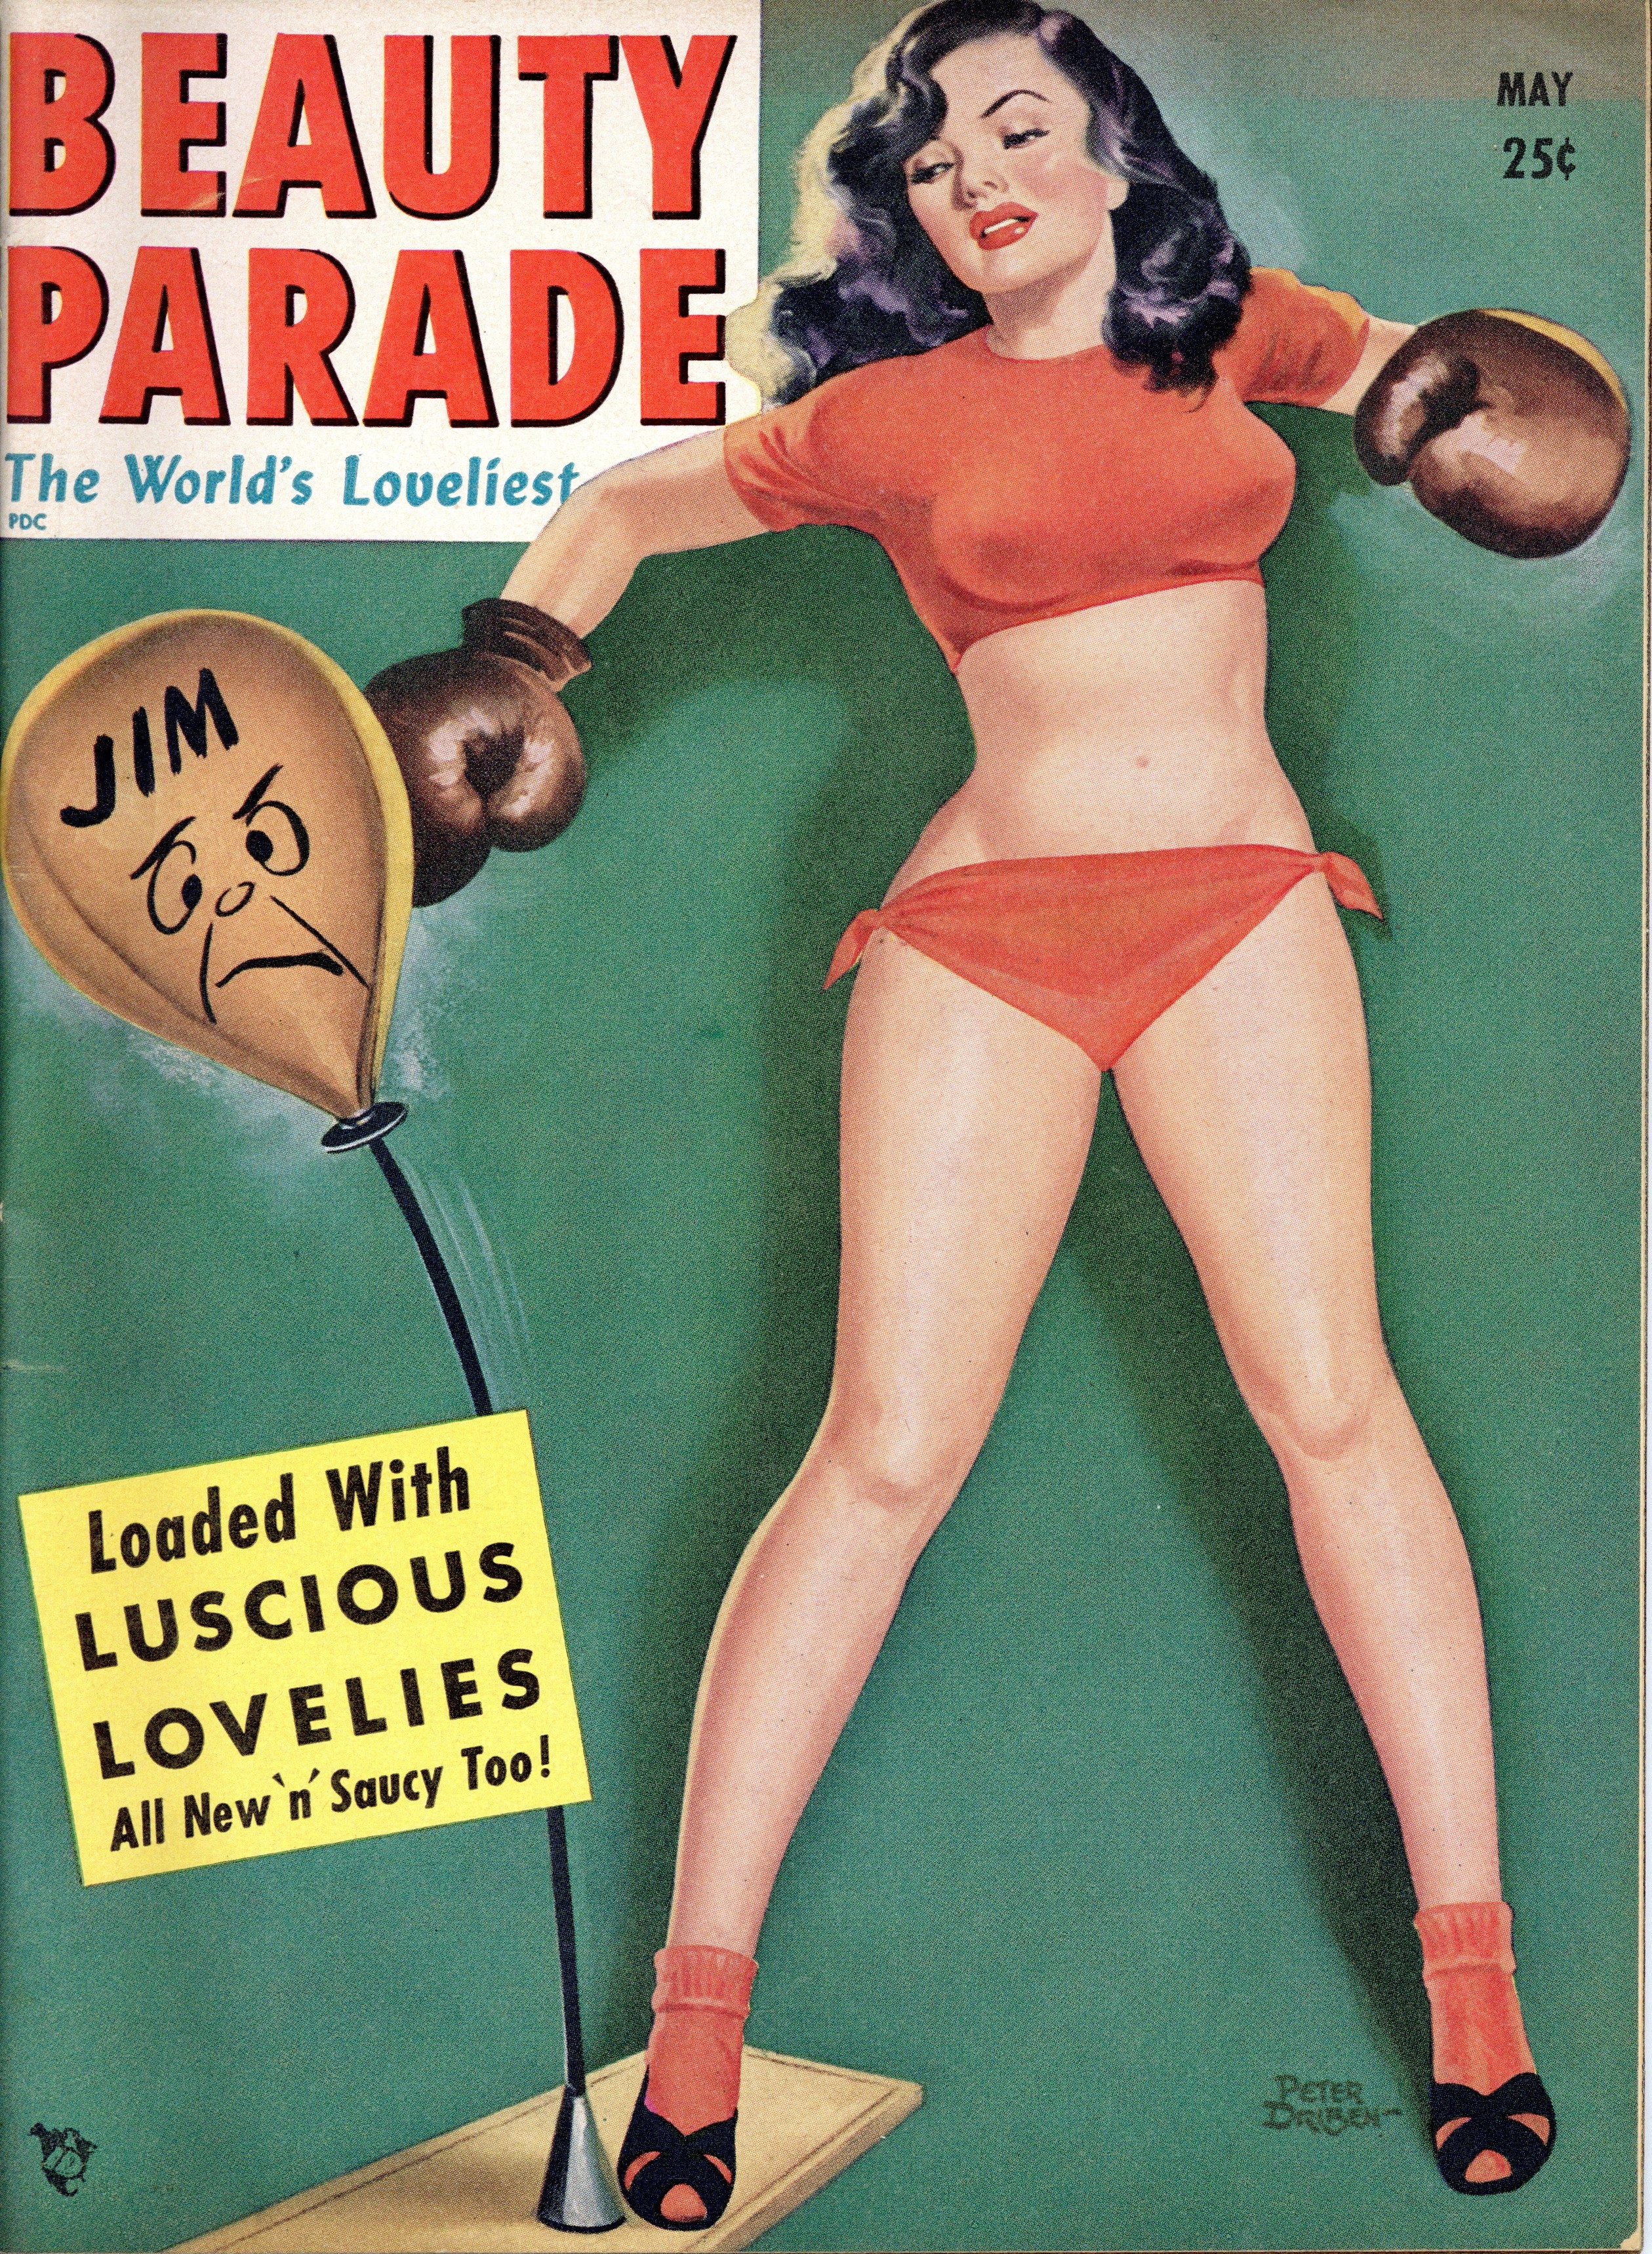 Beauty Parade, May 1951